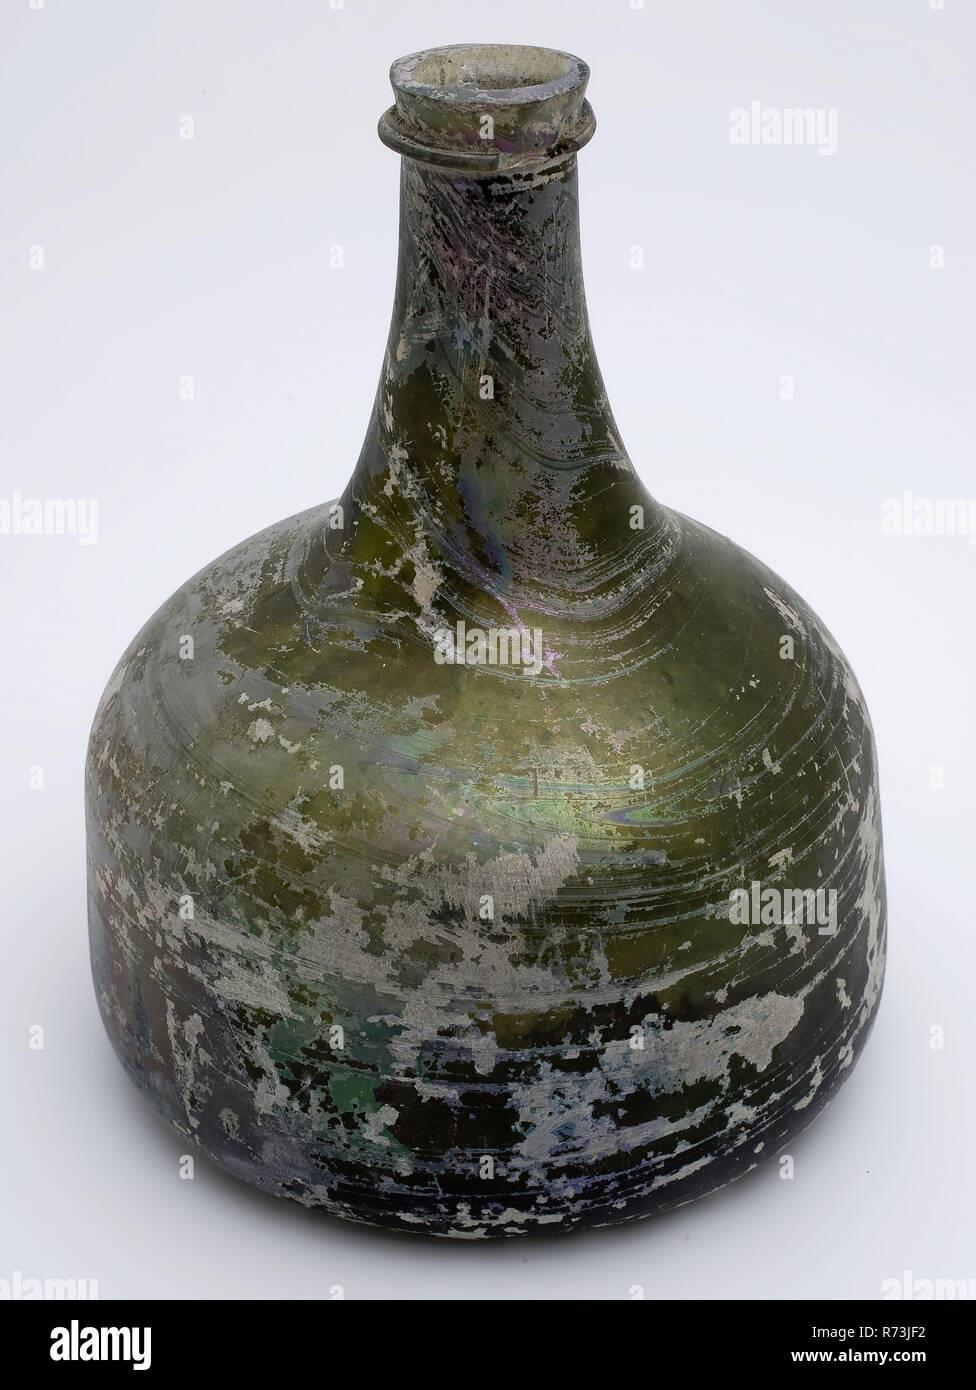 Ventre bouteille en verre vert olive clair, marteau, irisé, bouteille de  vin porte-bouteille en verre, trouver des sols et soufflé en verre en forme  circulaire d'application en bouteille en verre vert clair.